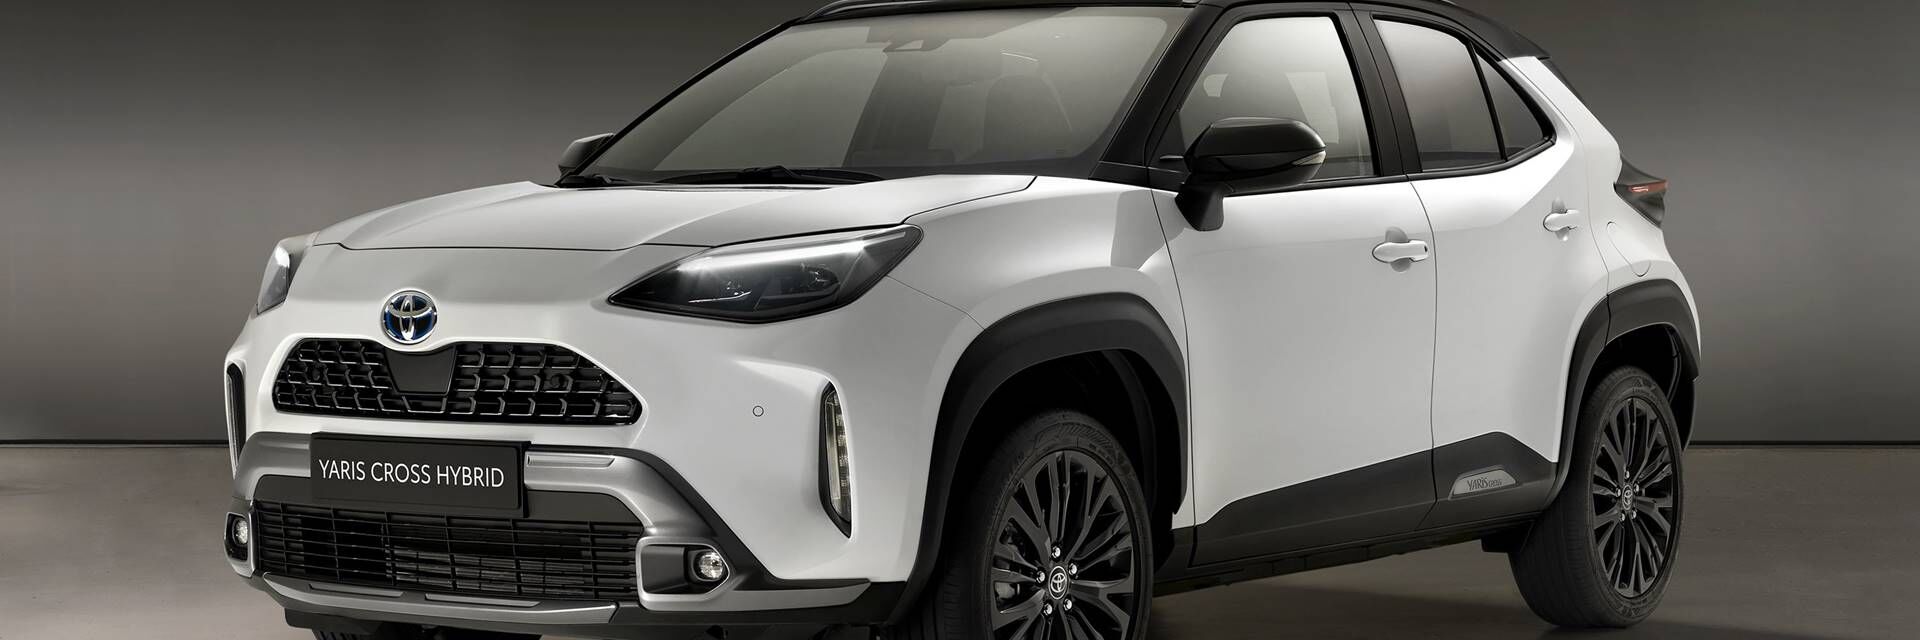 Ofertón del Toyota Yaris Cross entrega rápida esta semana de Black Friday con Total Renting